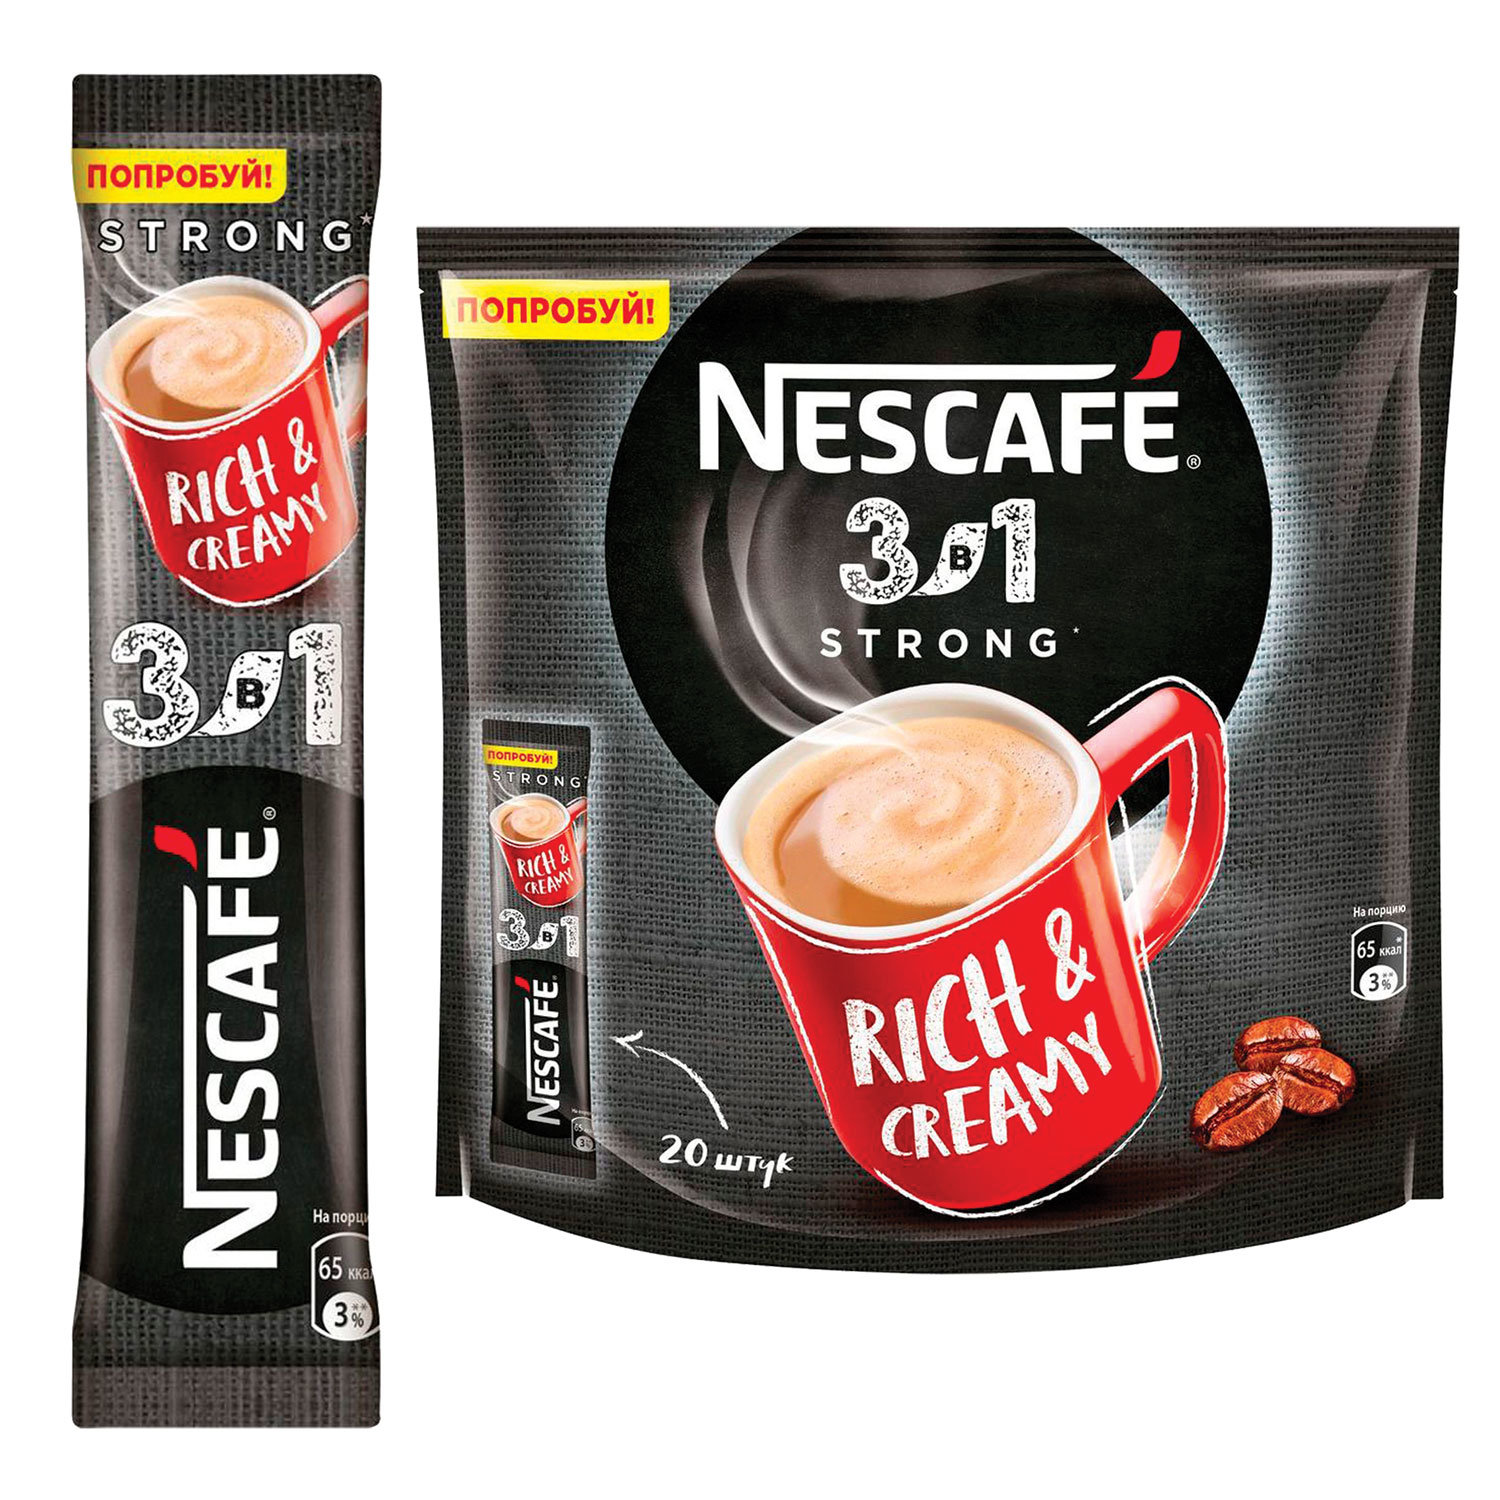 Лучший кофе 3 в 1. Nescafe 3в1 Rich & creamy. Кофе Нескафе 3 в 1 14,5г крепкий 20*20. Нескафе 3в1 кофе Классик 14,5гр упаковка стики. Кофе в пакетиках 3 в 1 Nescafe.